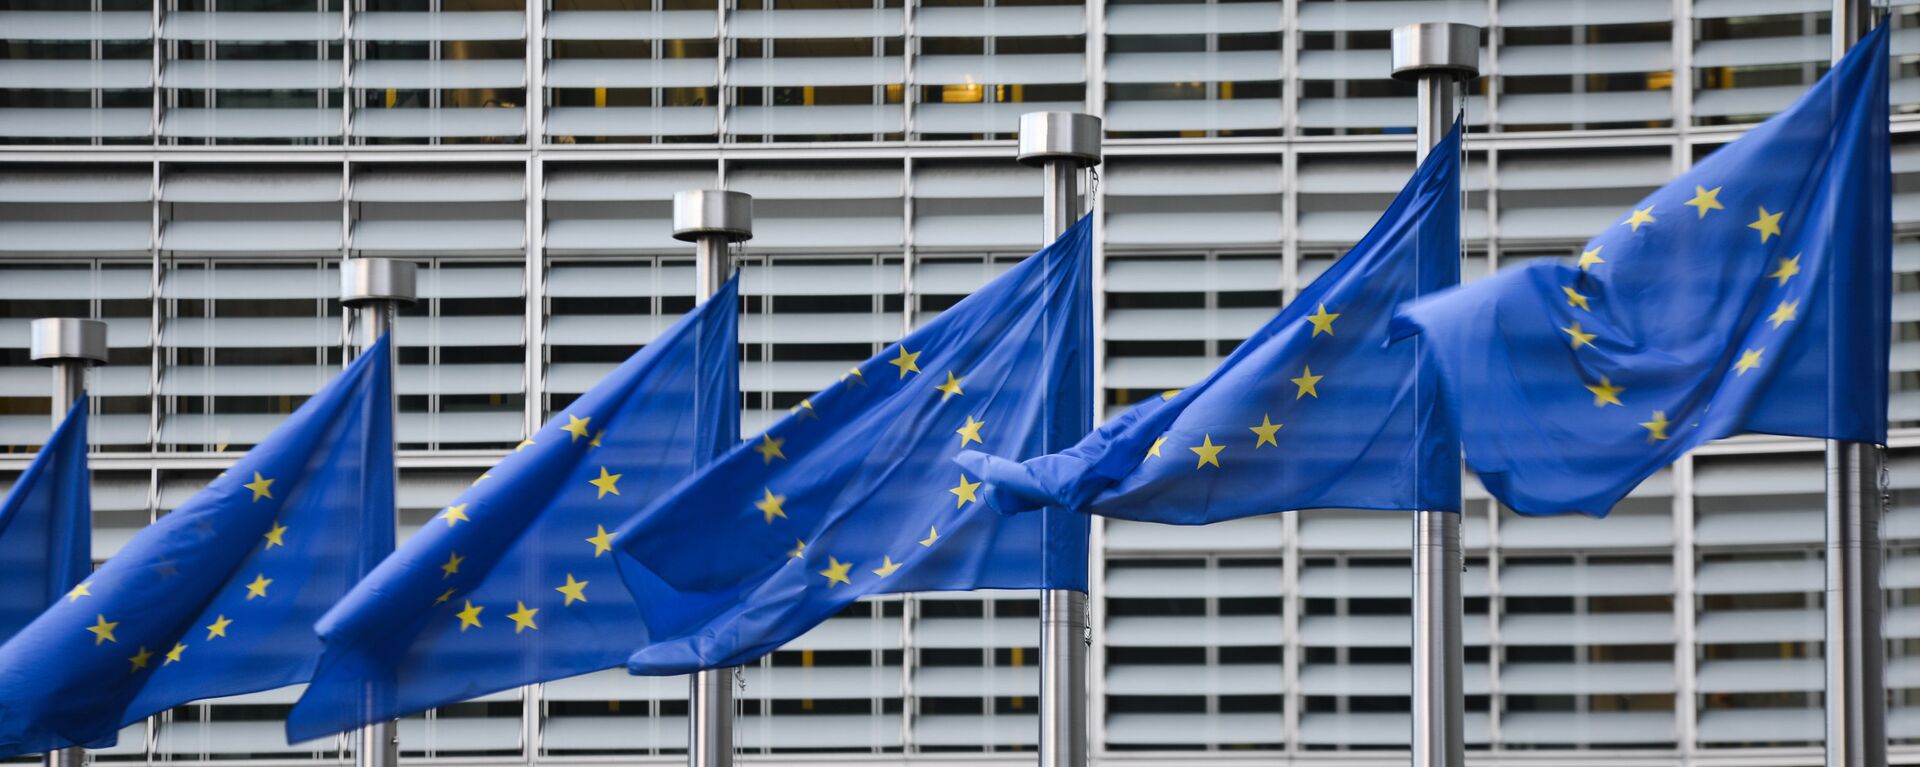 Флаги Евросоюза у здания штаб-квартиры Европейской комиссии в Брюсселе - Sputnik Латвия, 1920, 21.06.2021